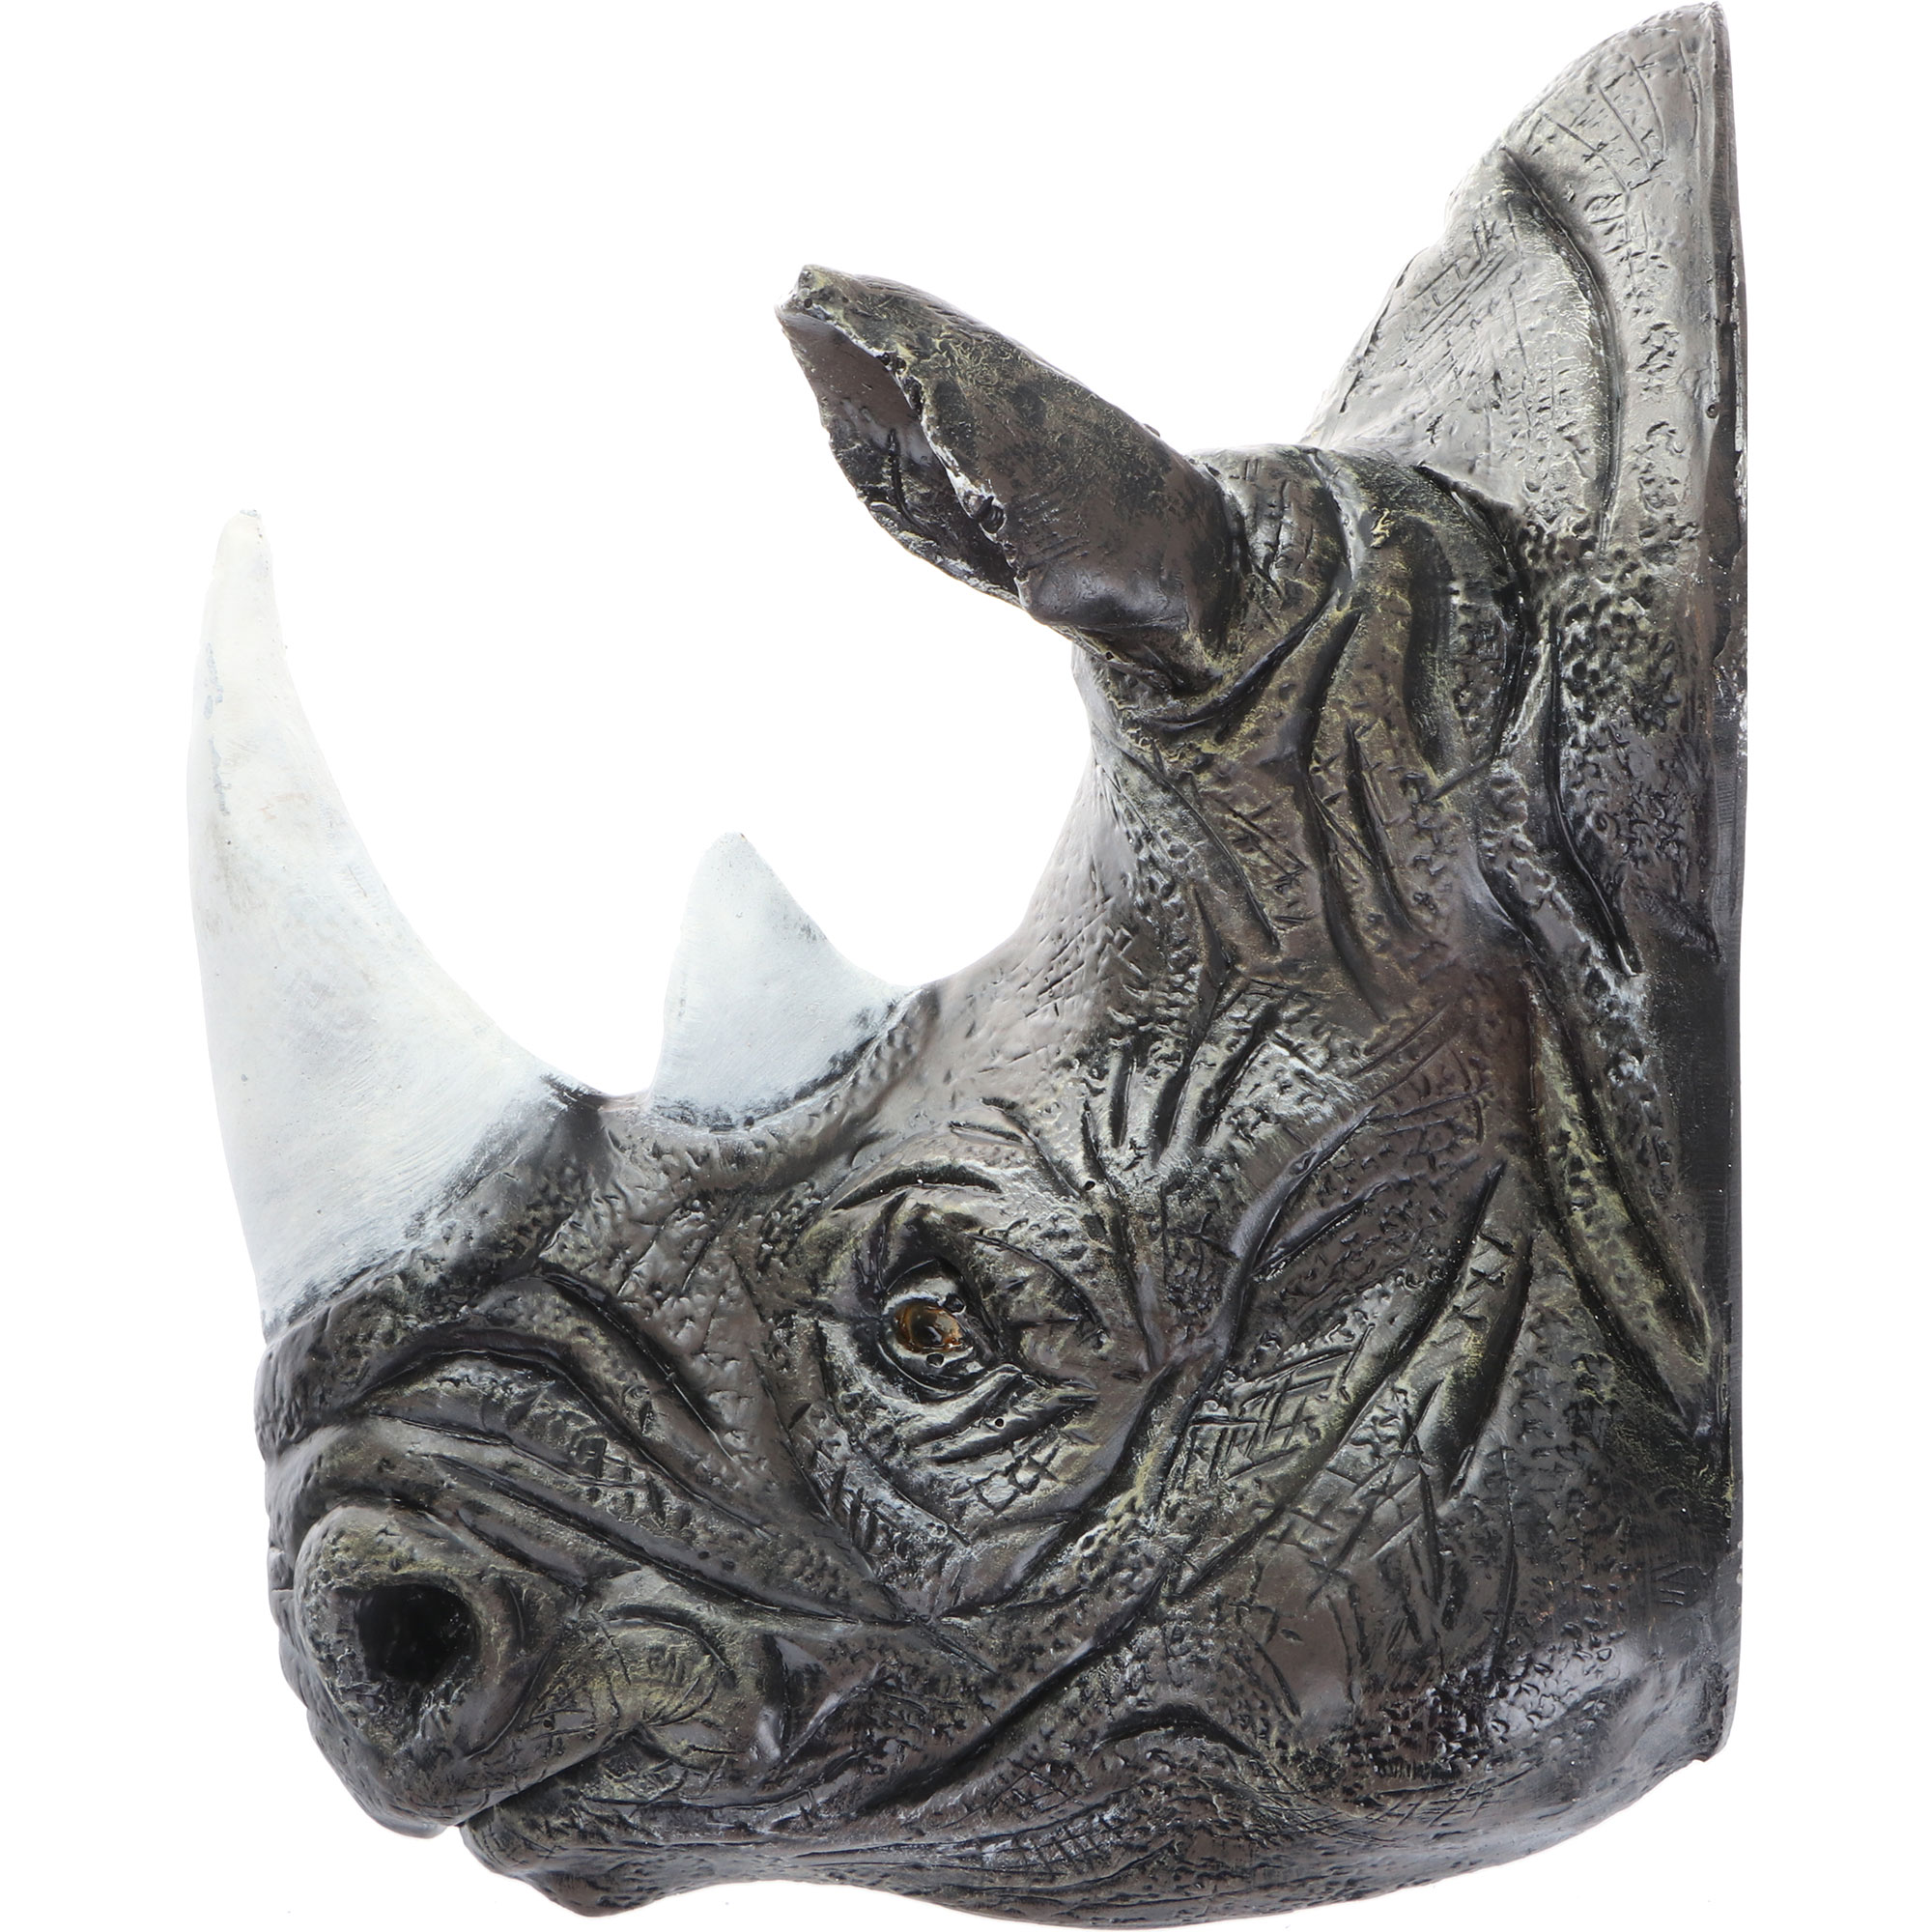 Фигура садовая Тпк полиформ голова носорога, 45 см изделие декоративное тпк полиформ медведя голова 44 см бронза